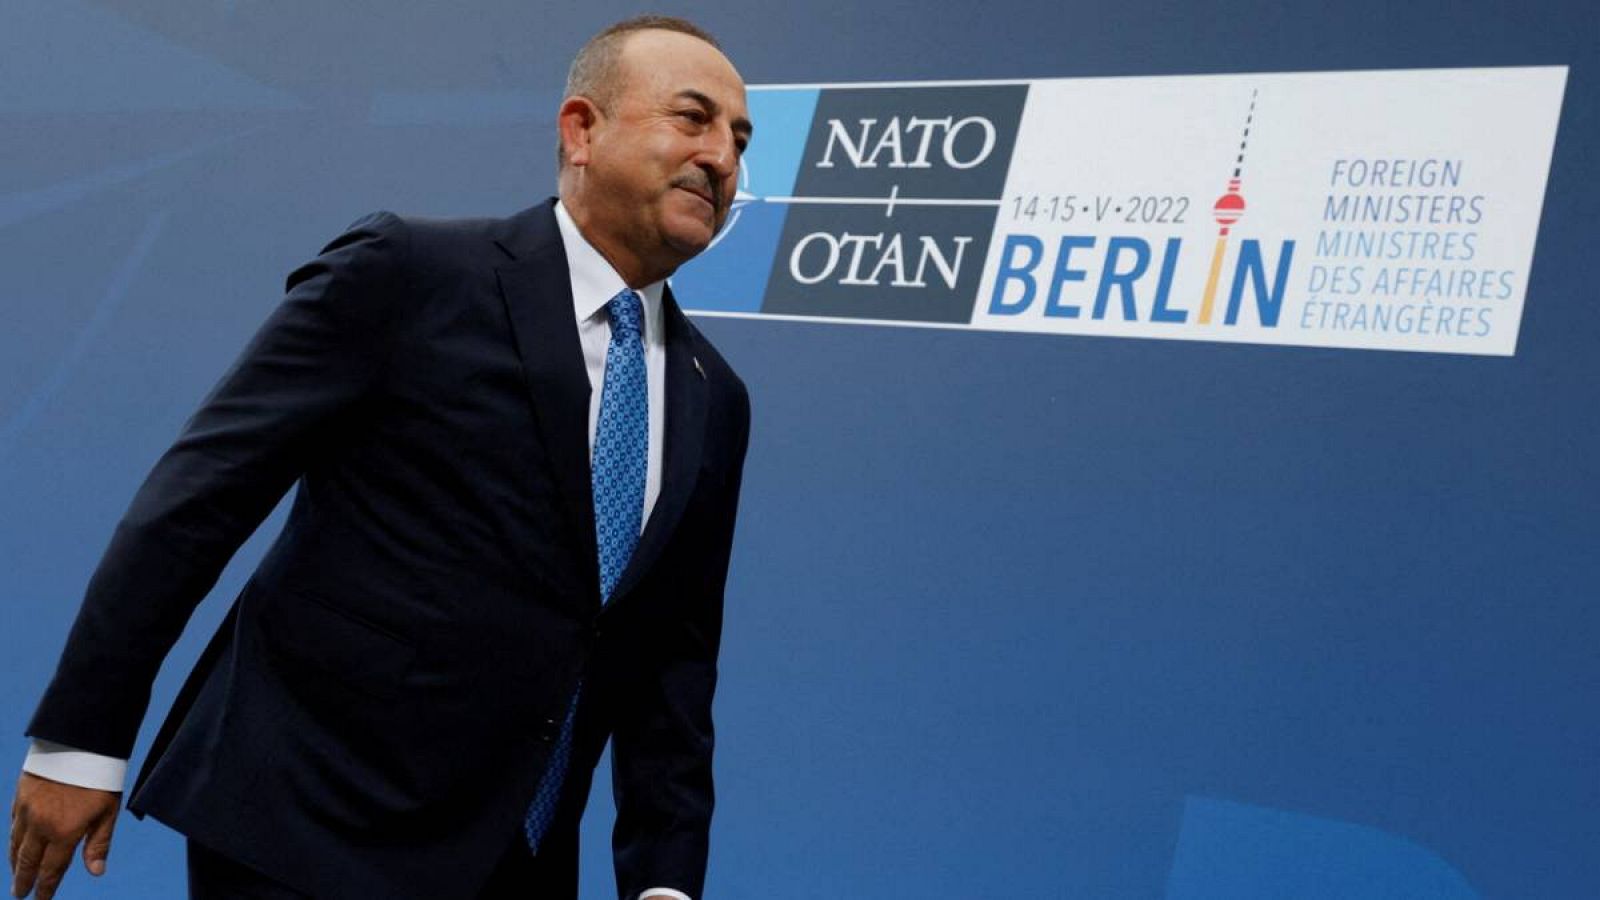 El ministro de Relaciones Exteriores de Turquía, Mevlut Cavusoglu, llega para una reunión de dos días de ministros de Relaciones Exteriores de la OTAN en Berlín, Alemania.